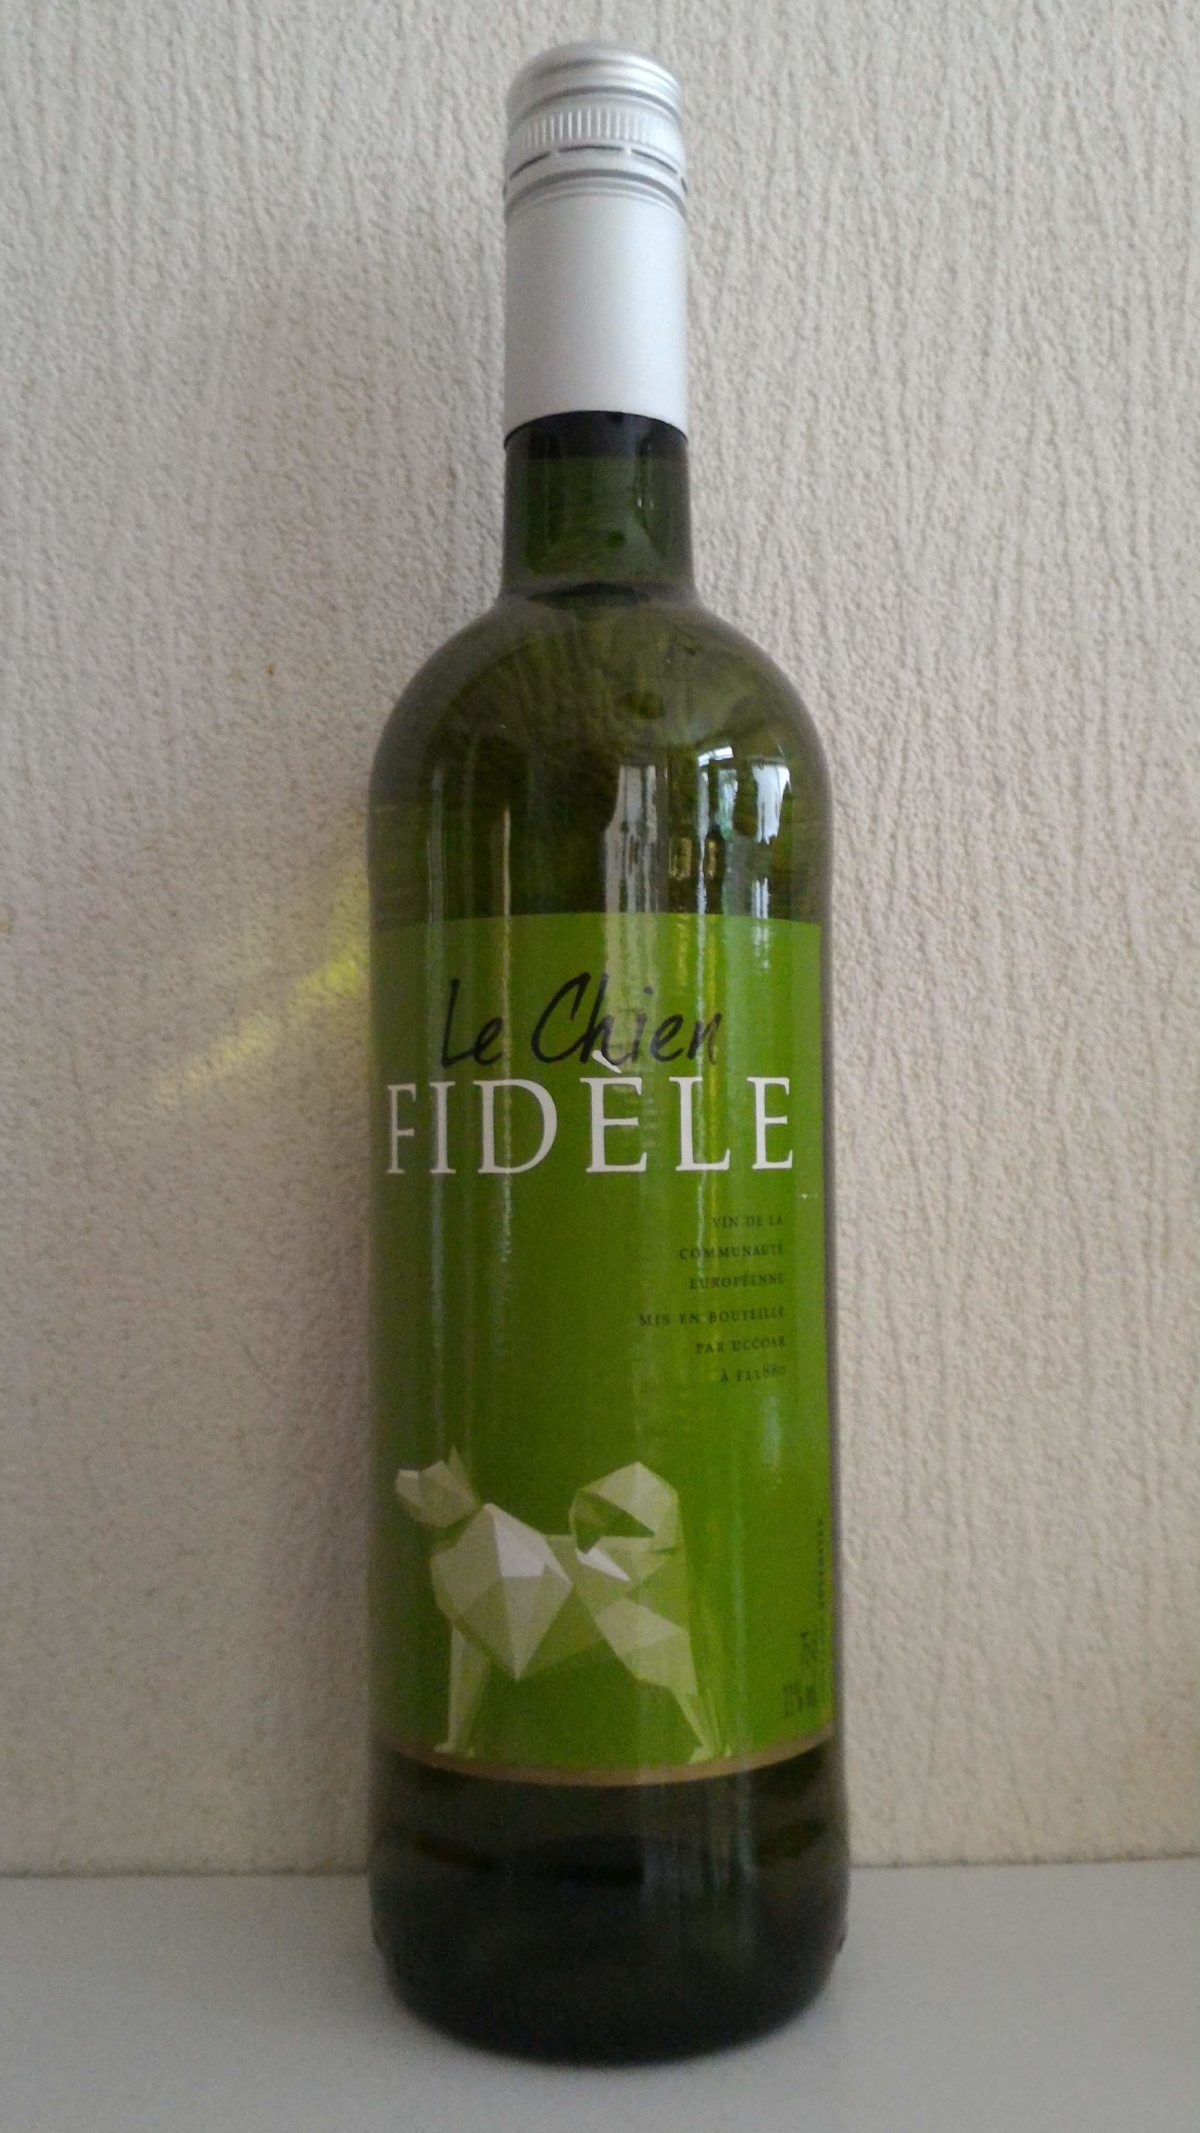 「ルシアン・フィデル・ブラン」 高コスパのおすすめ白ワイン